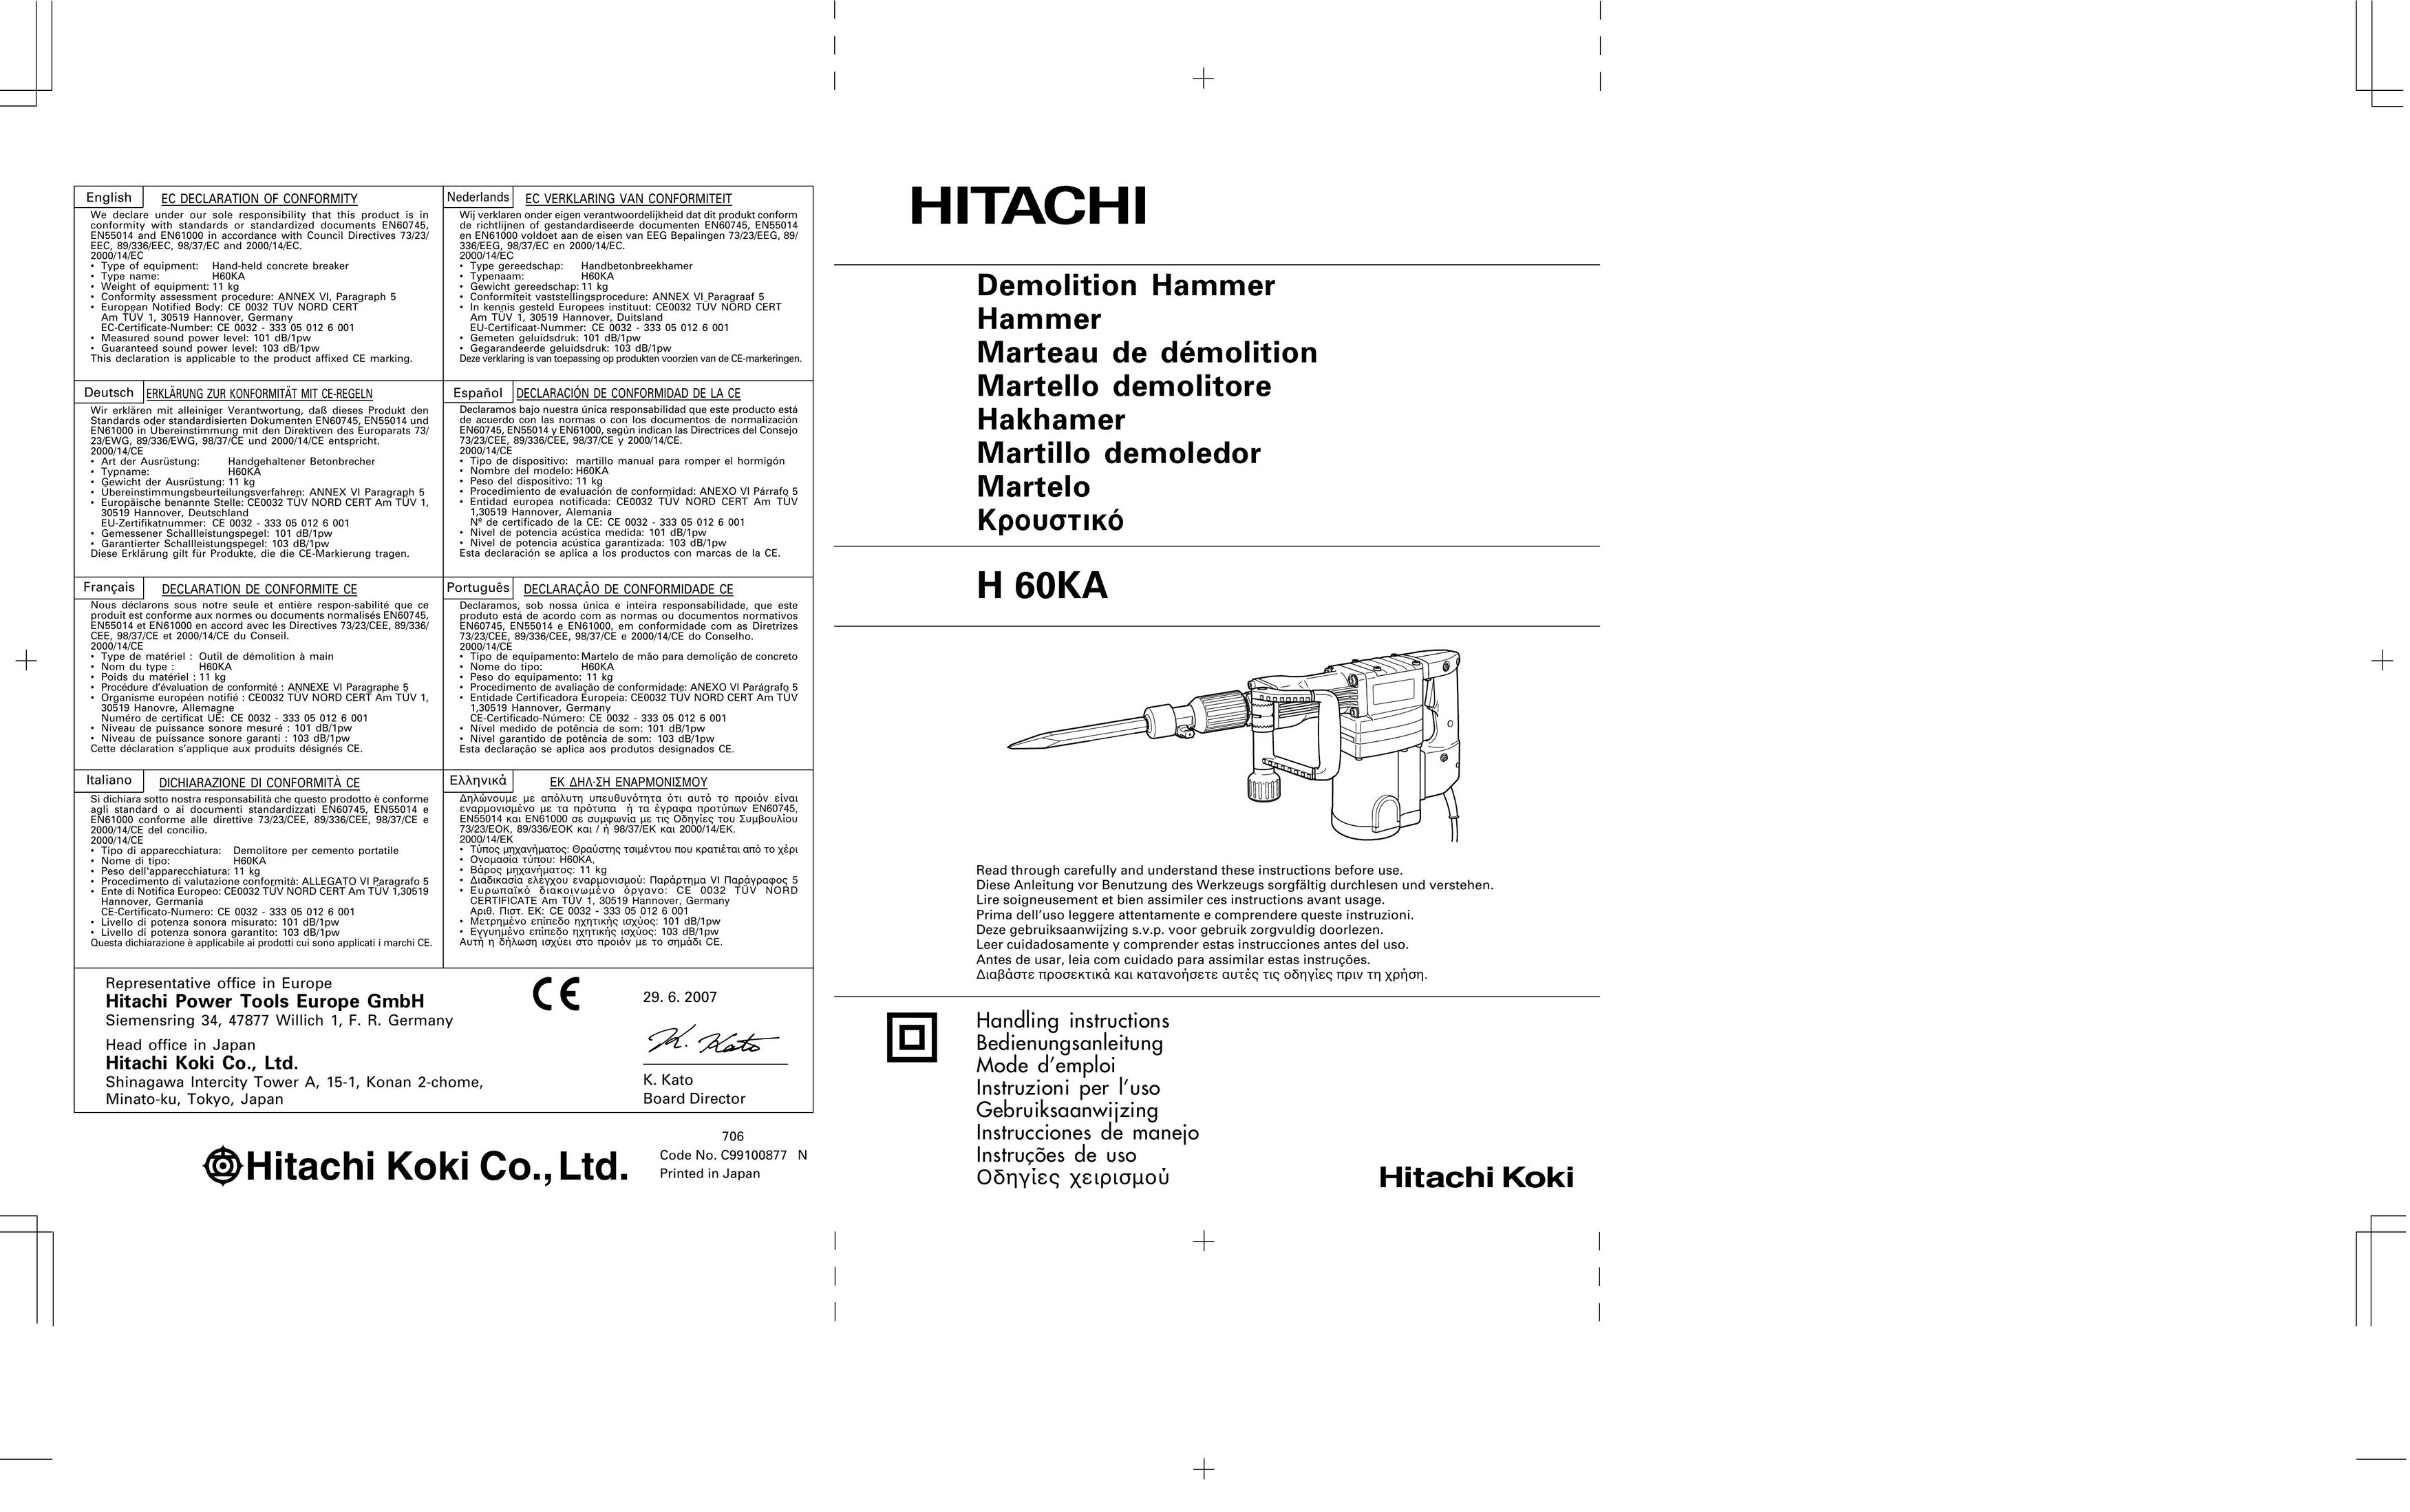 IBM Ricoh H 60KA Power Hammer User Manual